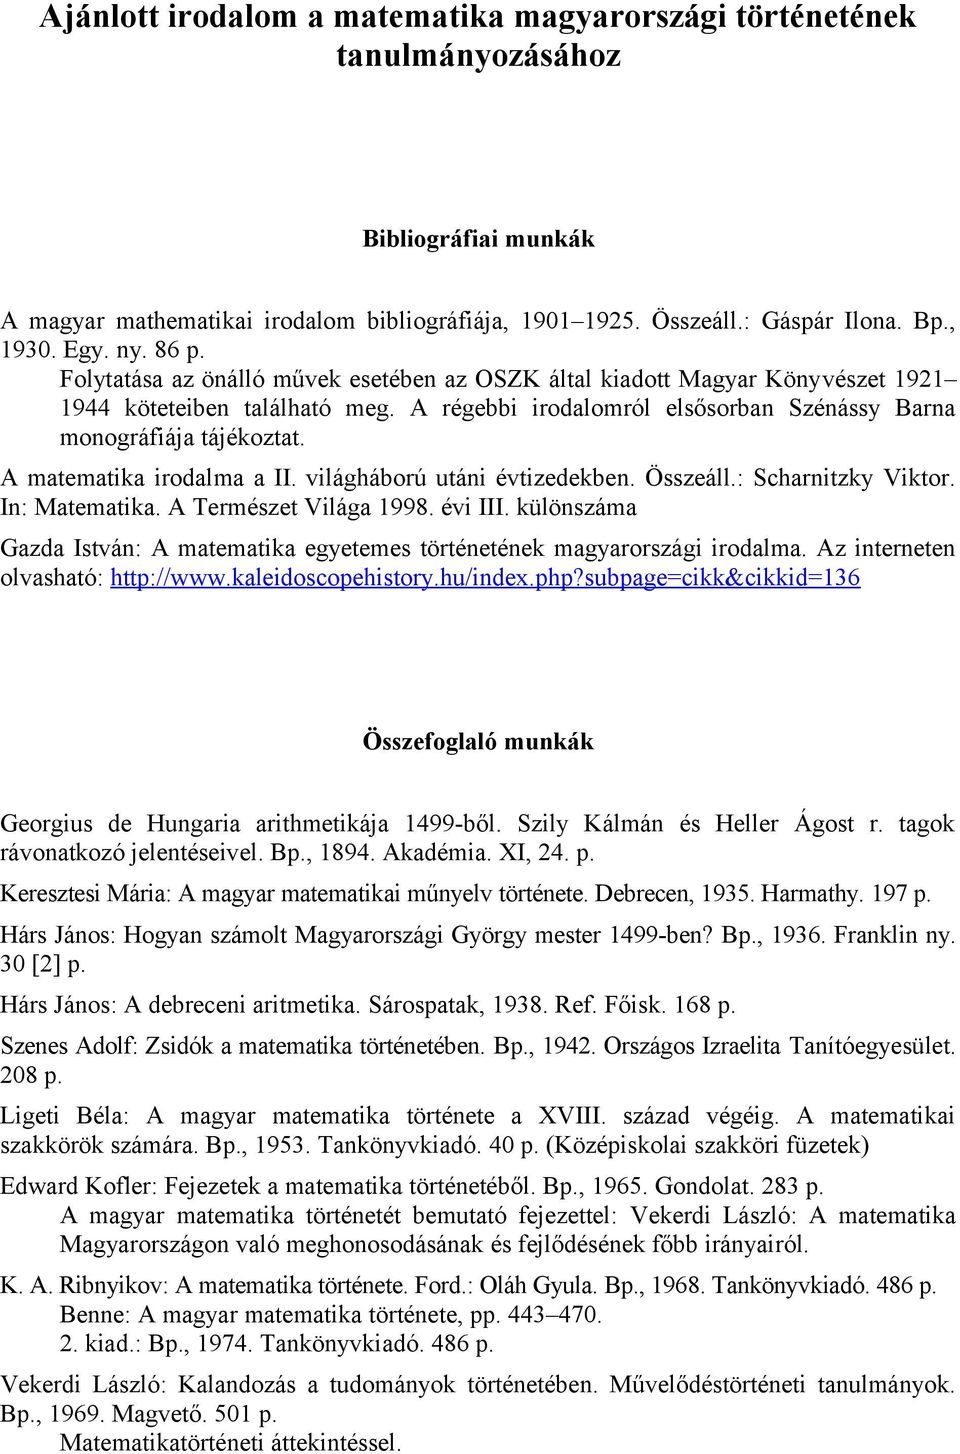 Ajánlott irodalom a matematika magyarországi történetének tanulmányozásához  - PDF Free Download